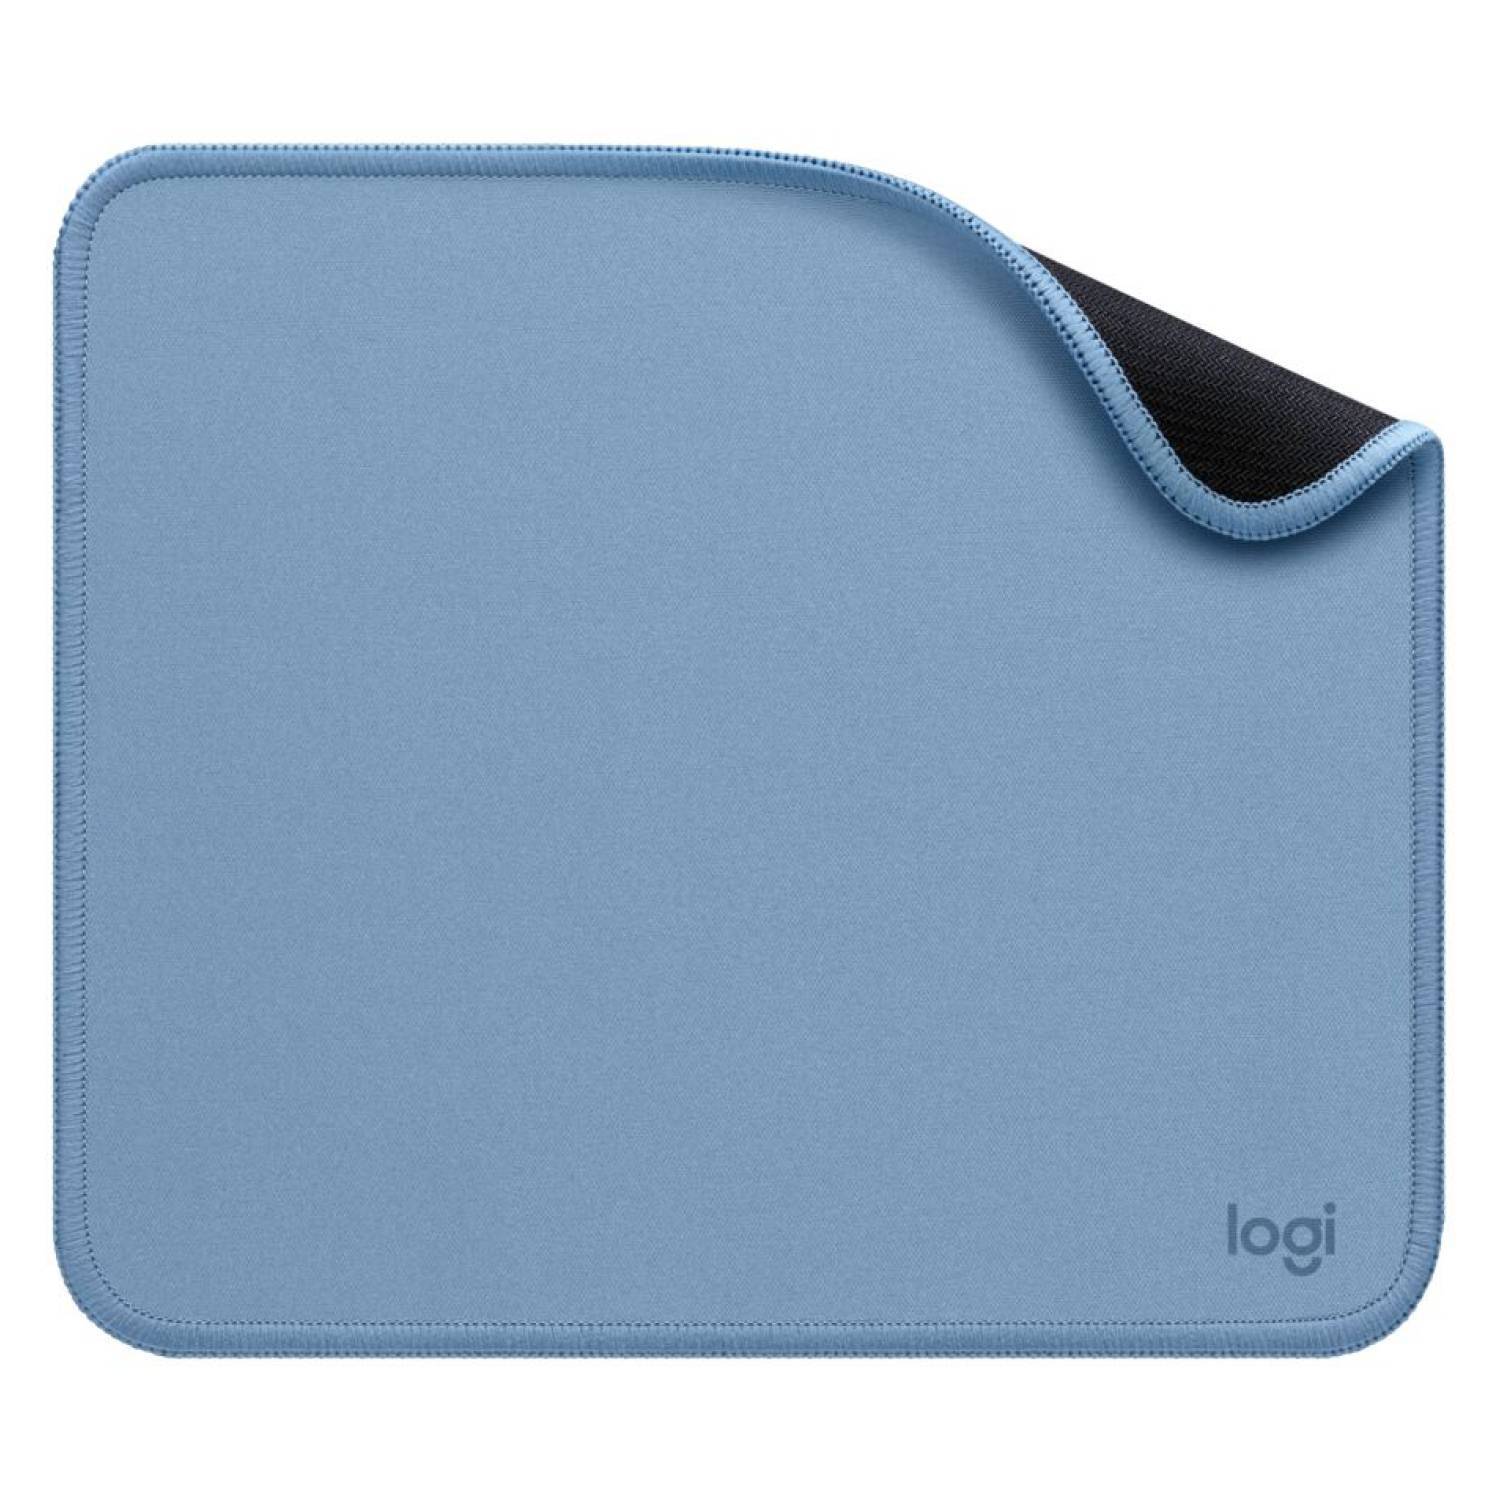 Mouse pad Logitech Studio series 23x20cm